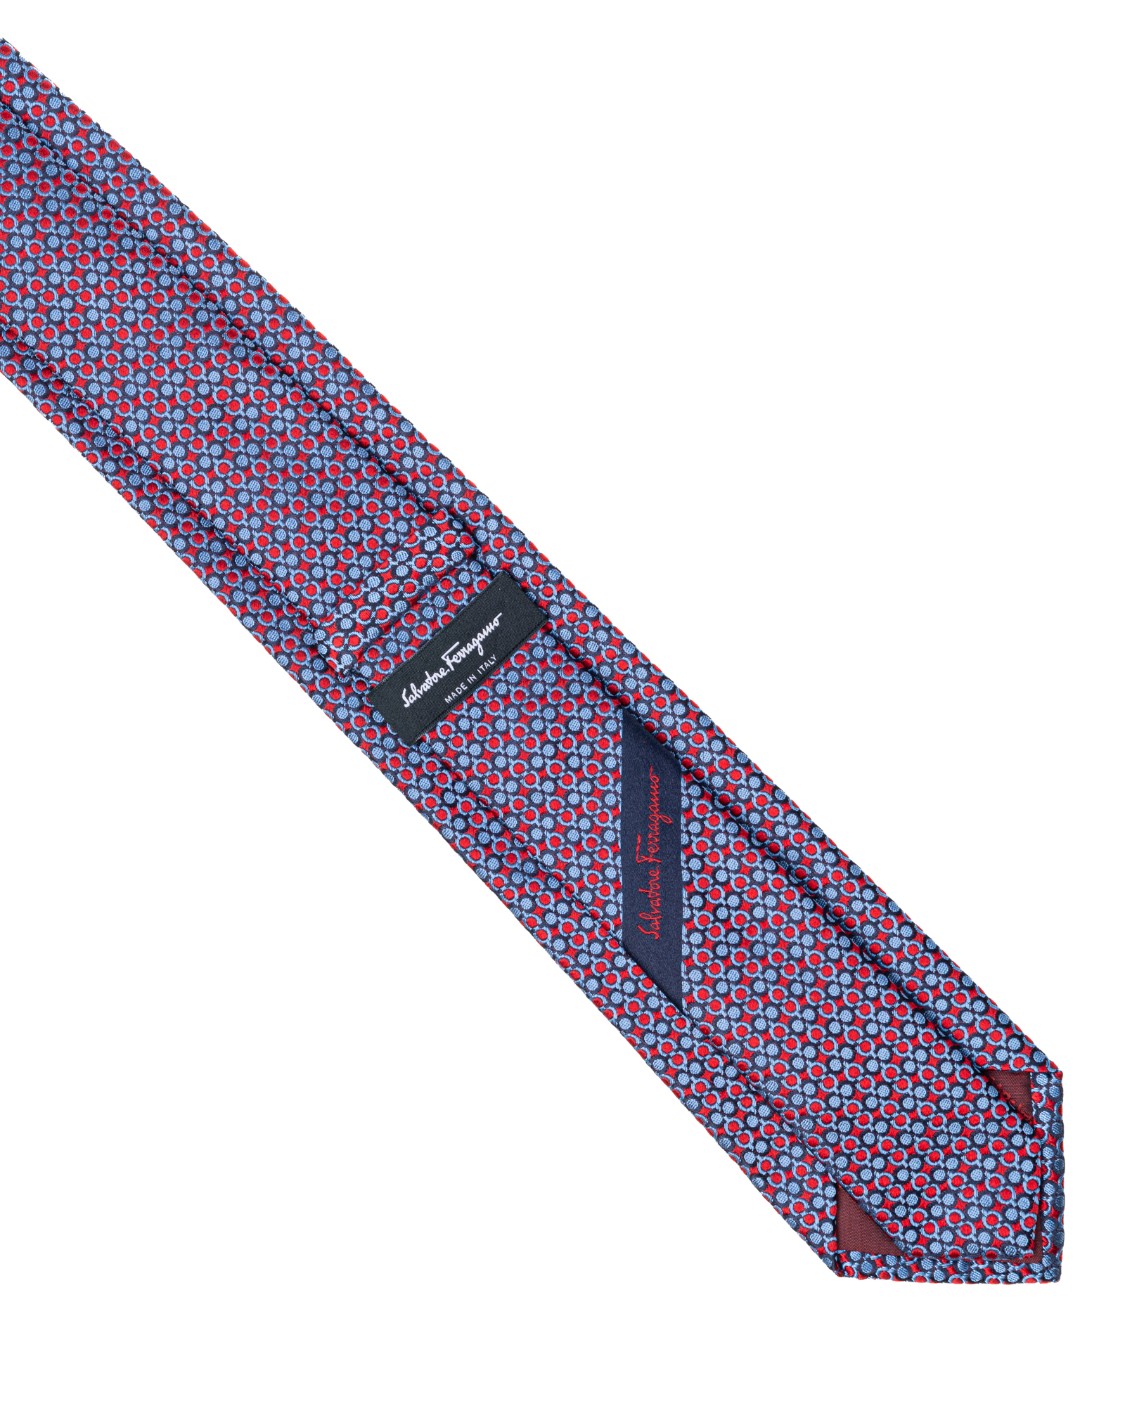 shop SALVATORE FERRAGAMO  Cravatta: Salvatore Ferragamo cravatta in seta con stampa Pachino.
Composizione: 100% seta.
Made in Italy.. 350725 4PACHINO7J-003754537 number 2680576